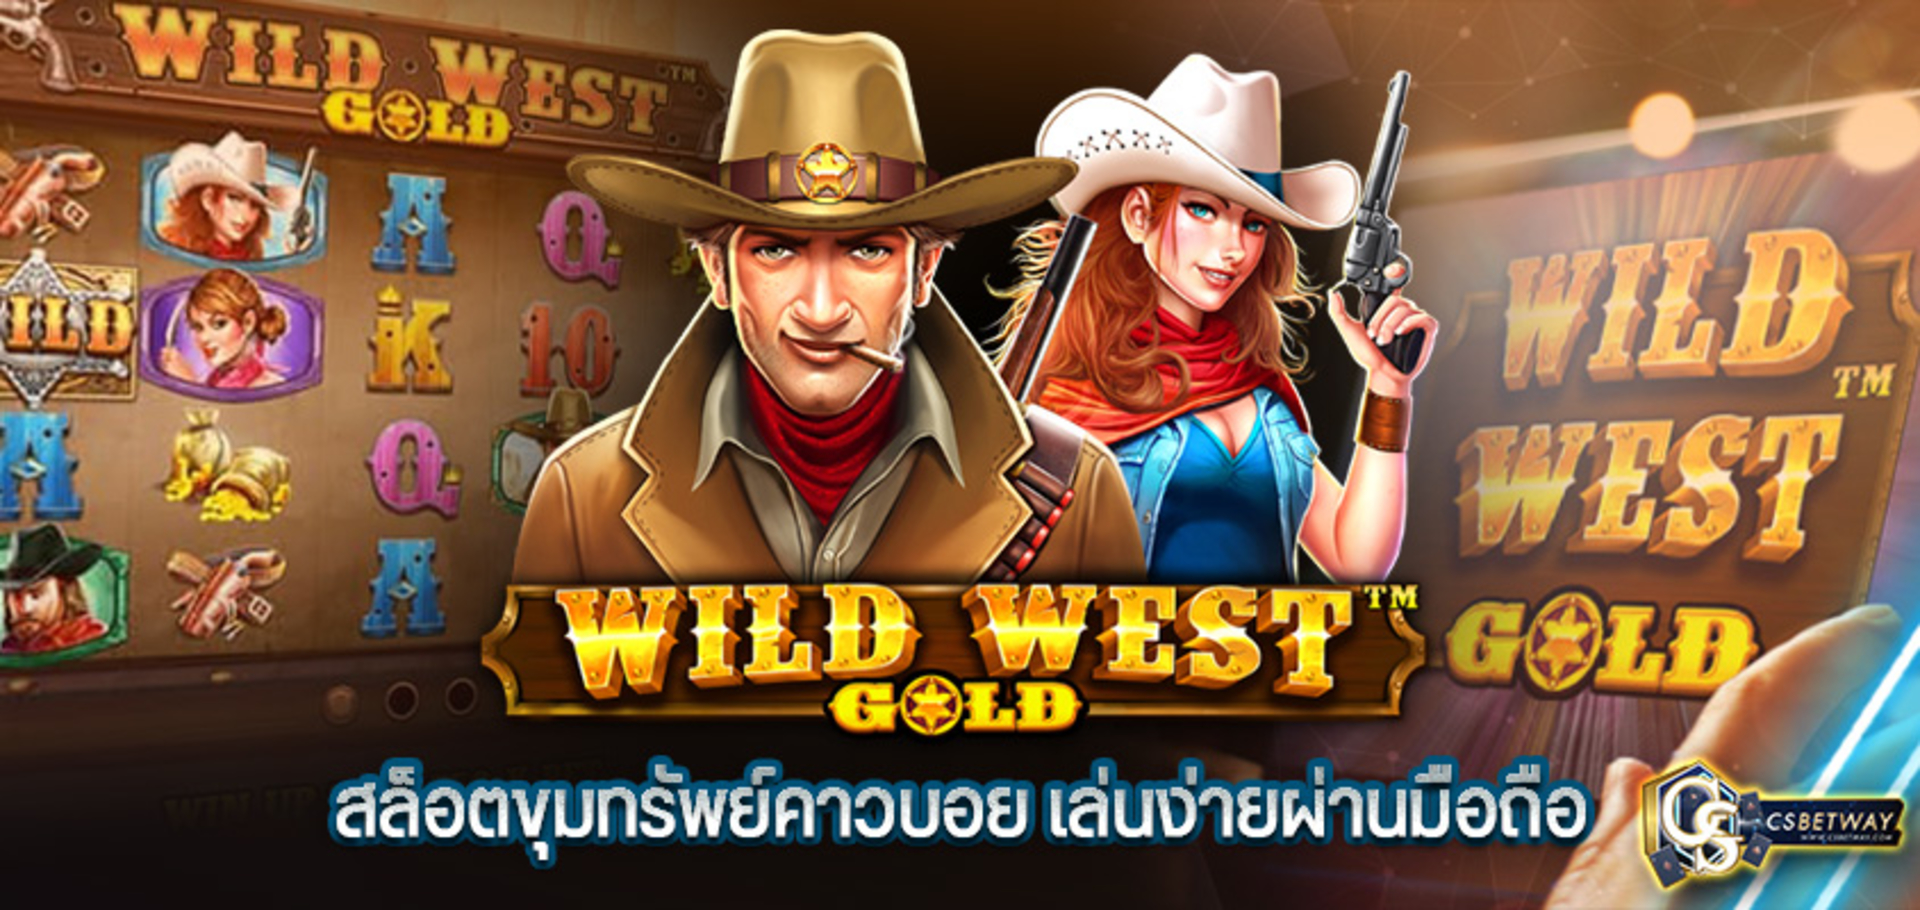 Wild West Gold สล็อตขุมทรัพย์คาวบอย สล็อตออนไลน์ เล่นง่ายผ่านมือถือ ได้เงินจริง 